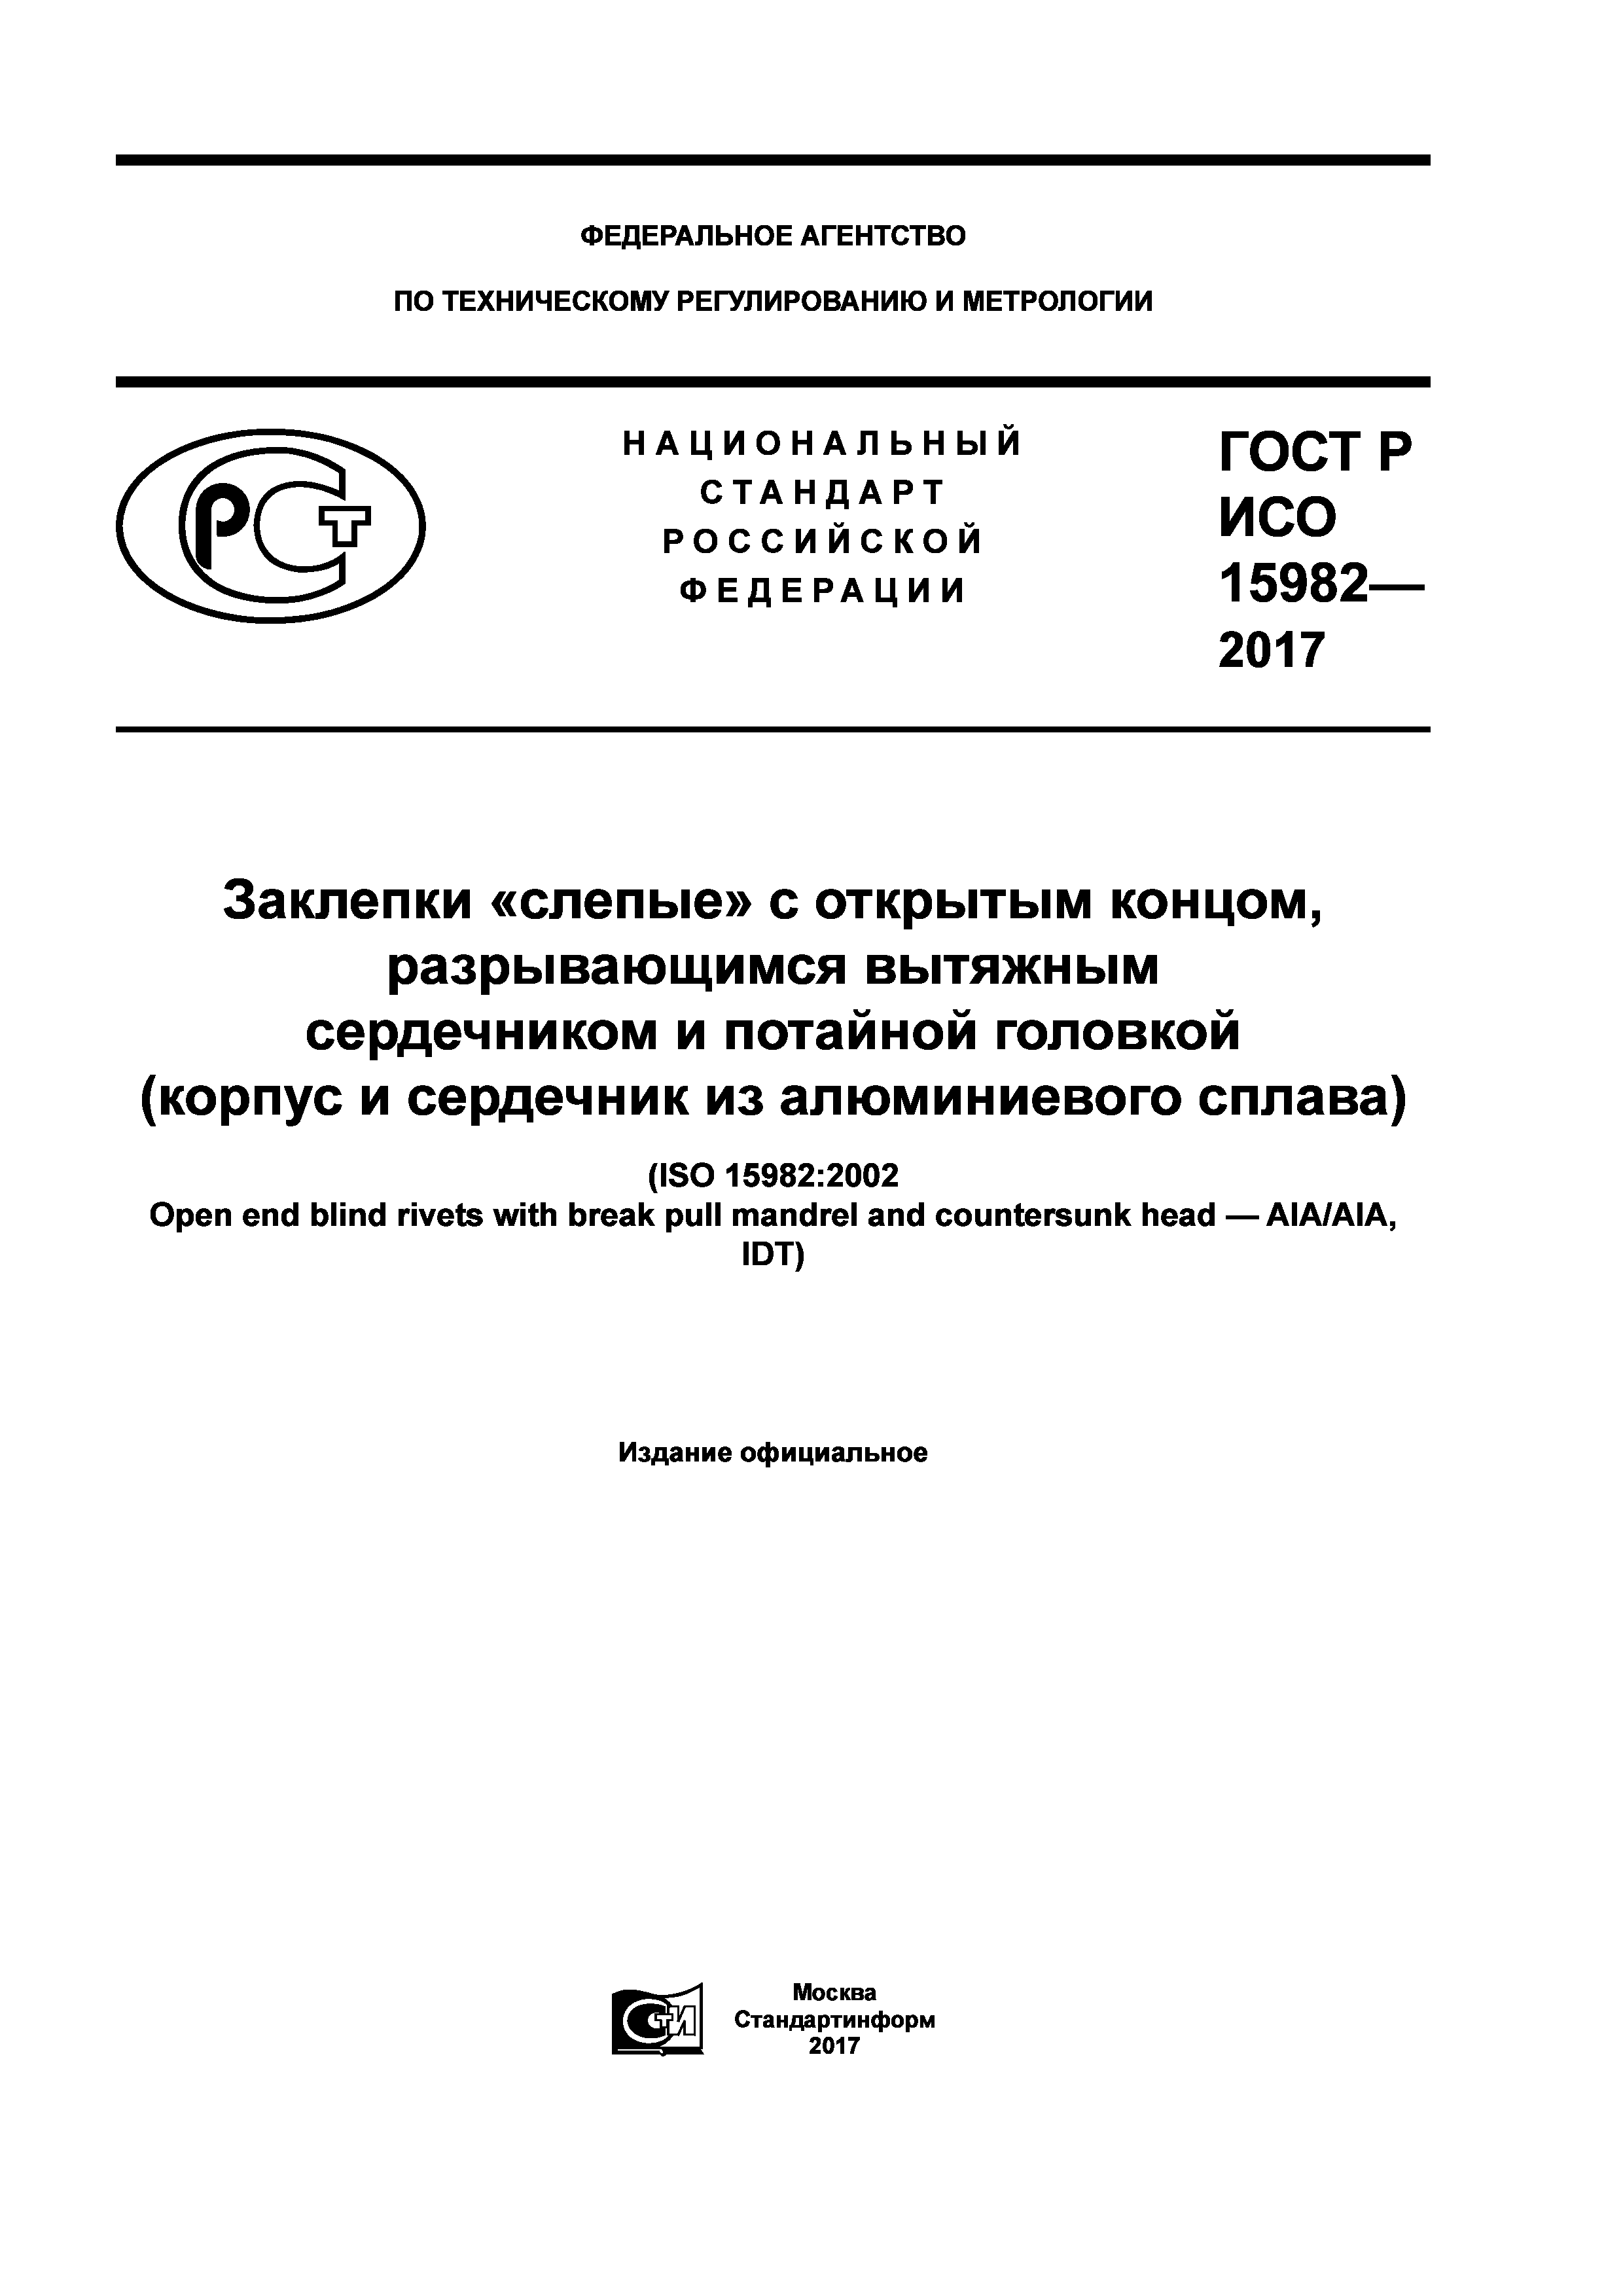 ГОСТ Р ИСО 15982-2017